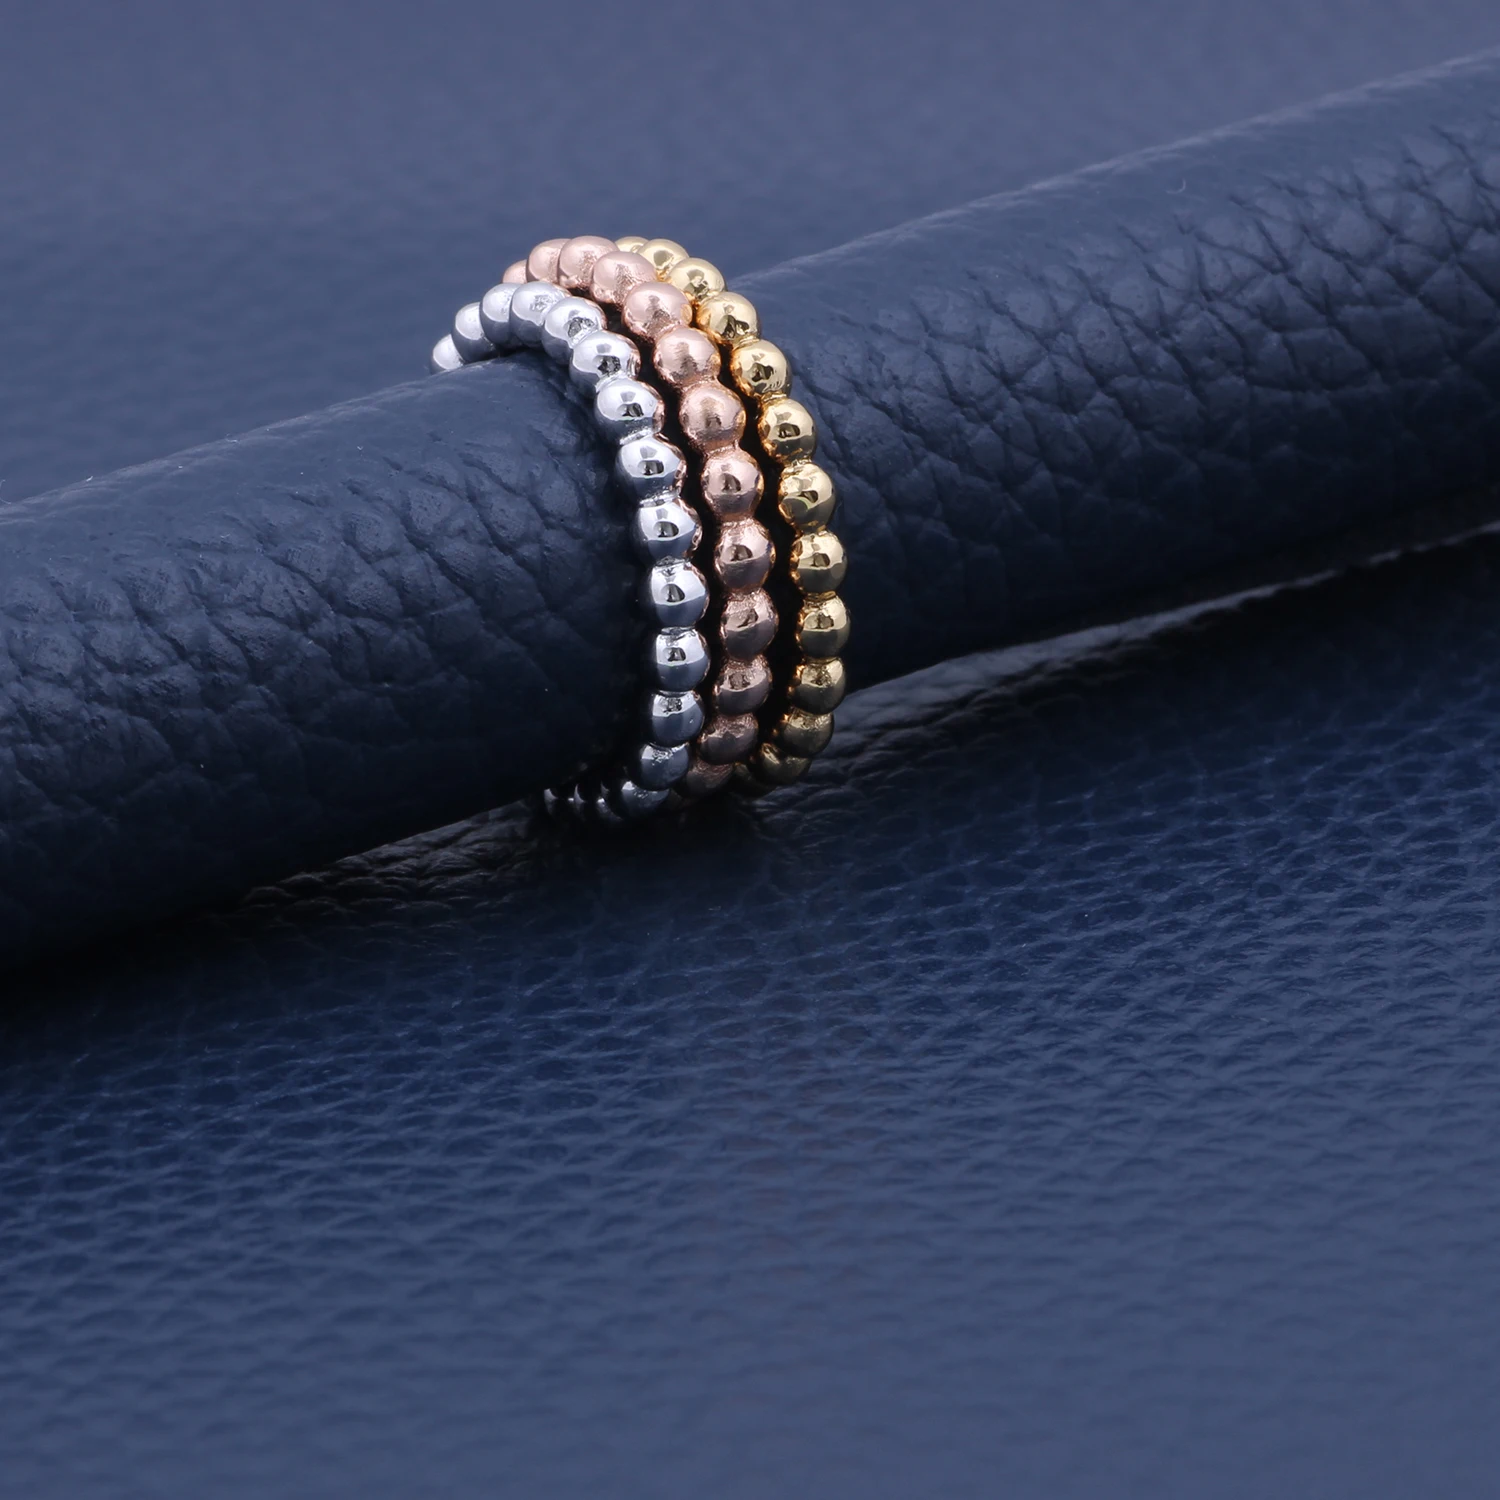 MetJakt 2,5 мм стерлингового серебра 925 классические простые свадебные дизайнерские кольца для женских ювелирных изделий